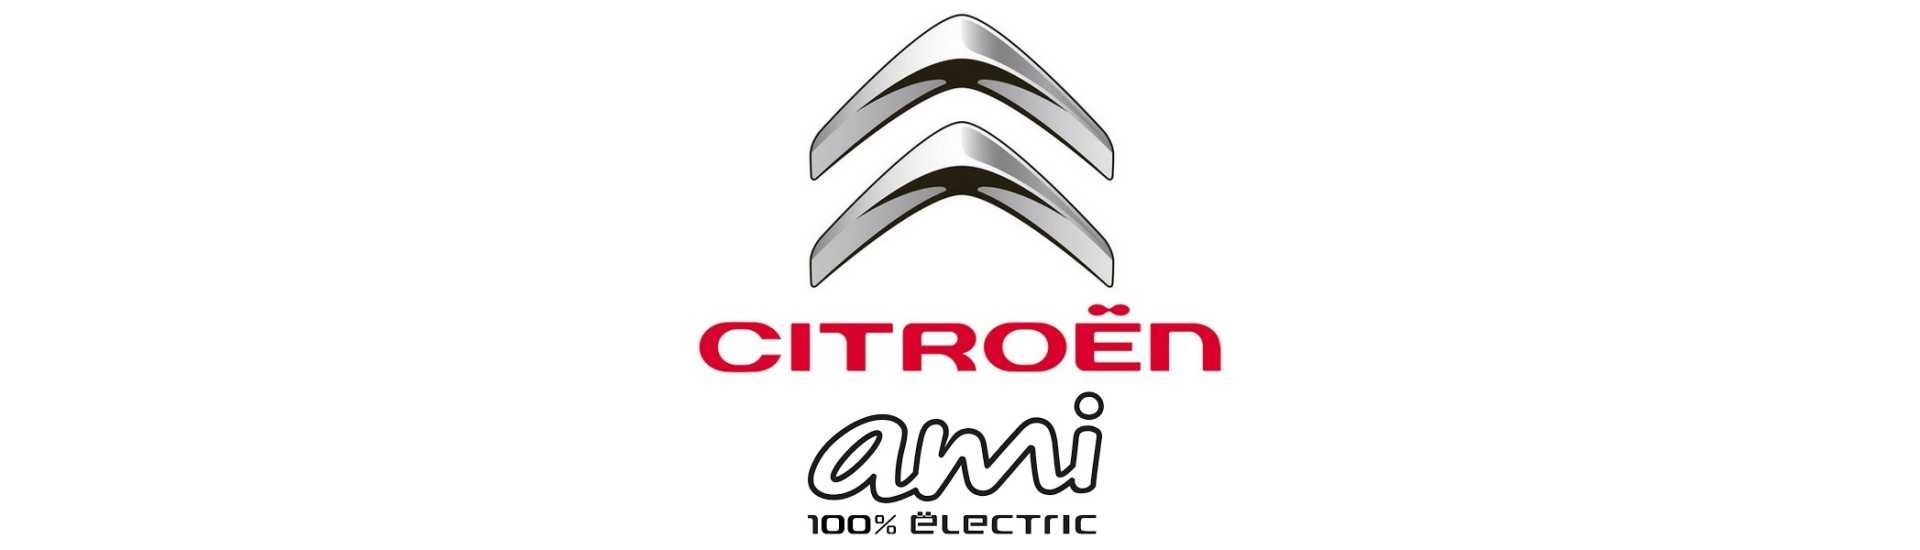 Logo e adesivo ao melhor preço para o carro sem uma permissão Citroën